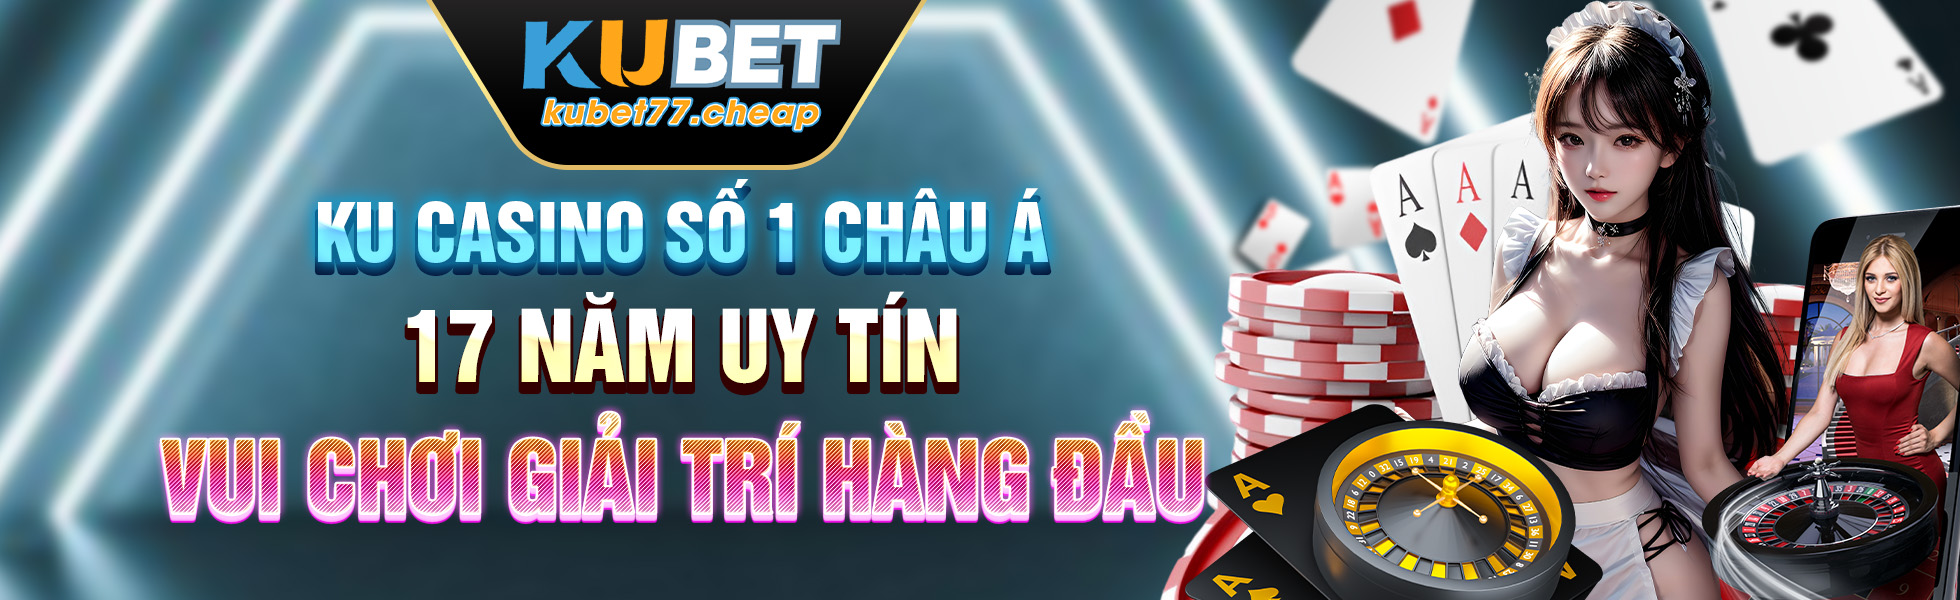 banner casino kubet